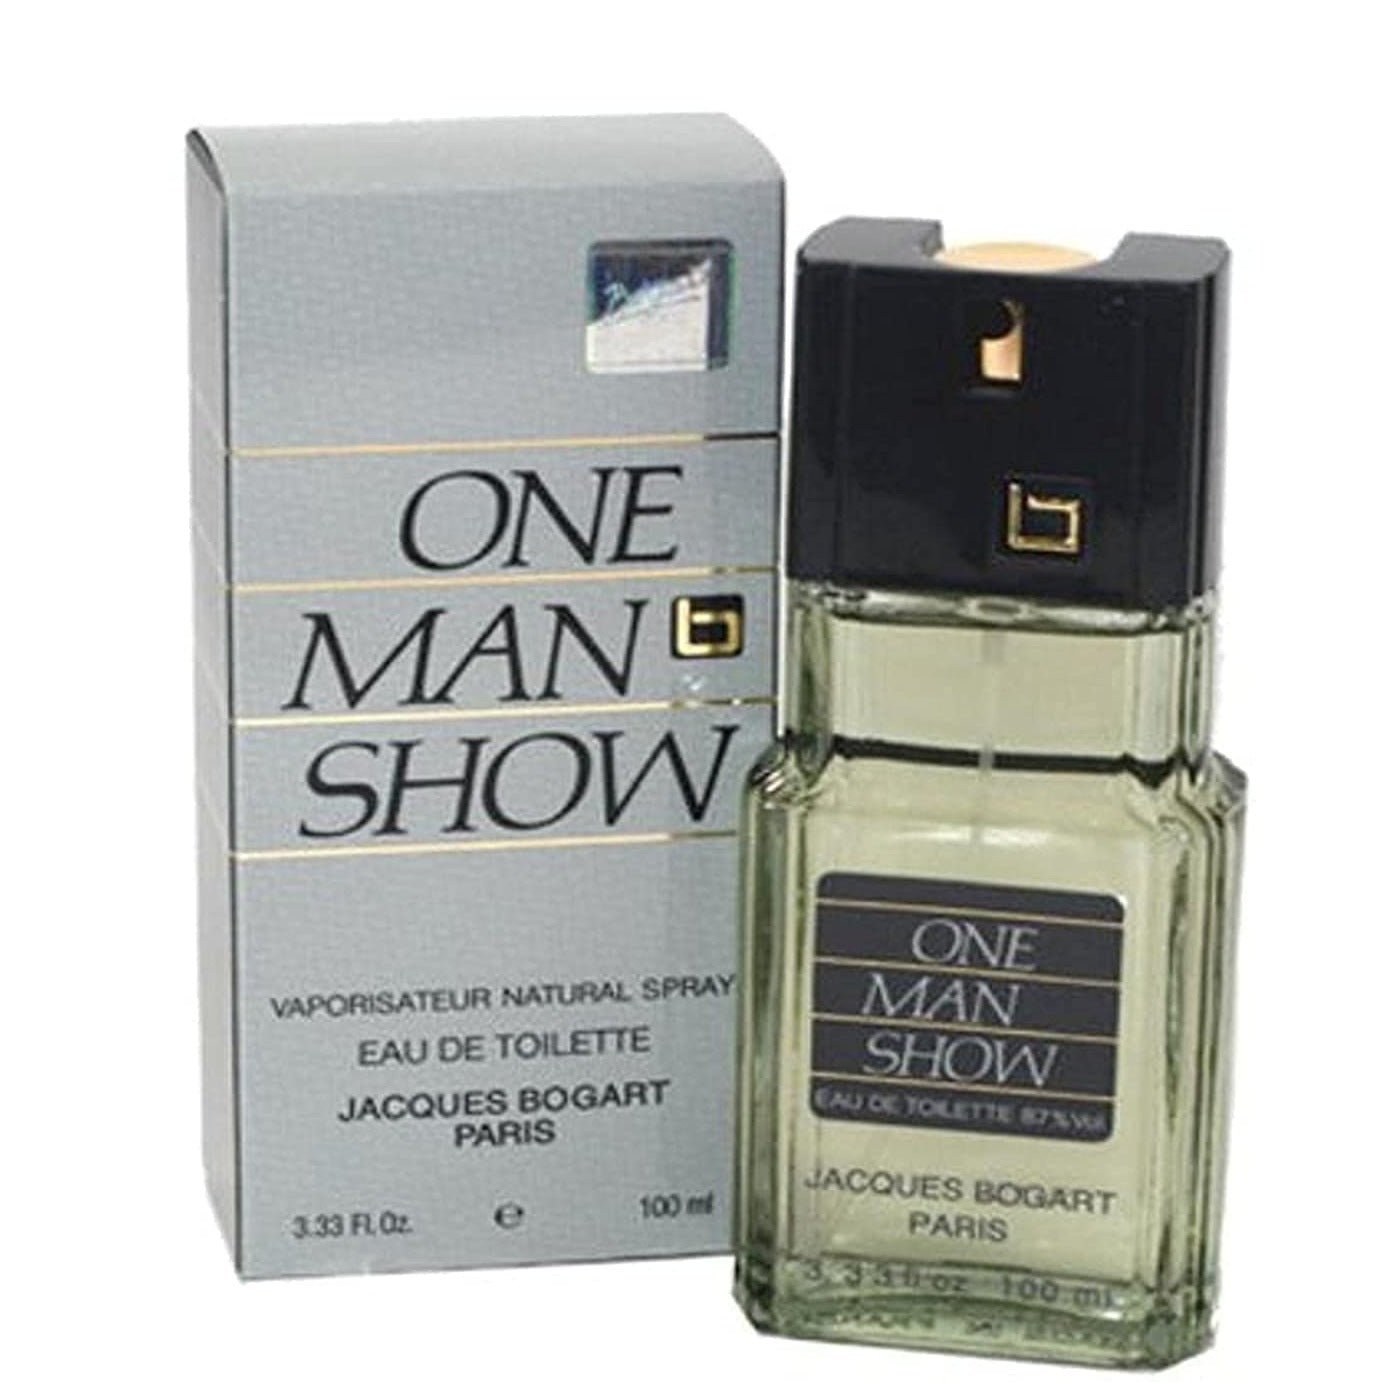 Jacques Bogart One Man Show EDT | My Perfume Shop Australia